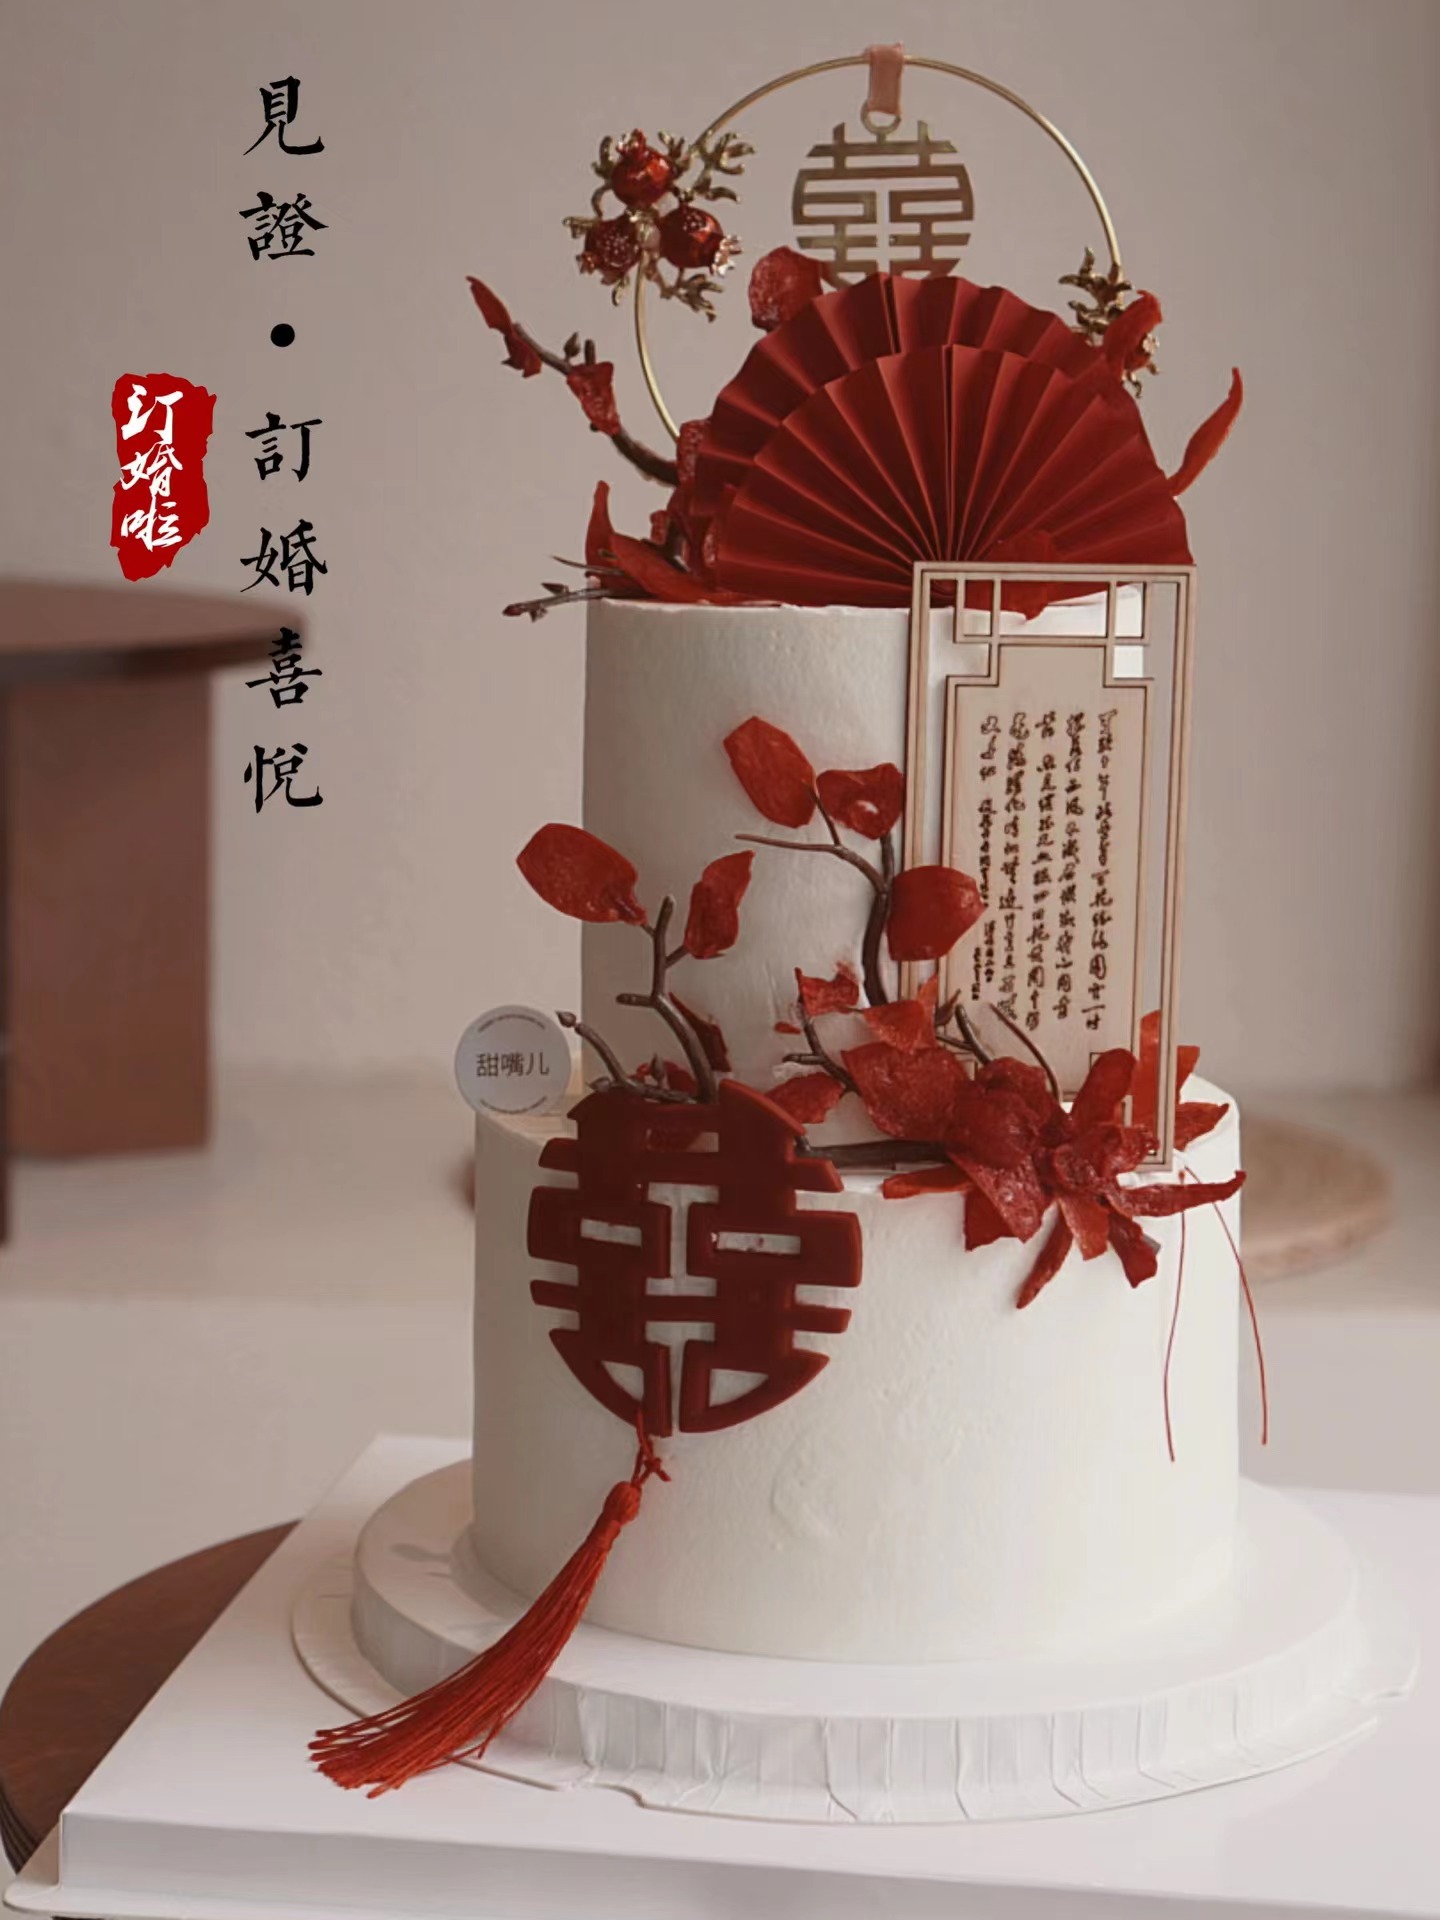 新中式结婚蛋糕 木质屏风文字结婚订婚红色囍流苏蛋糕装饰插件